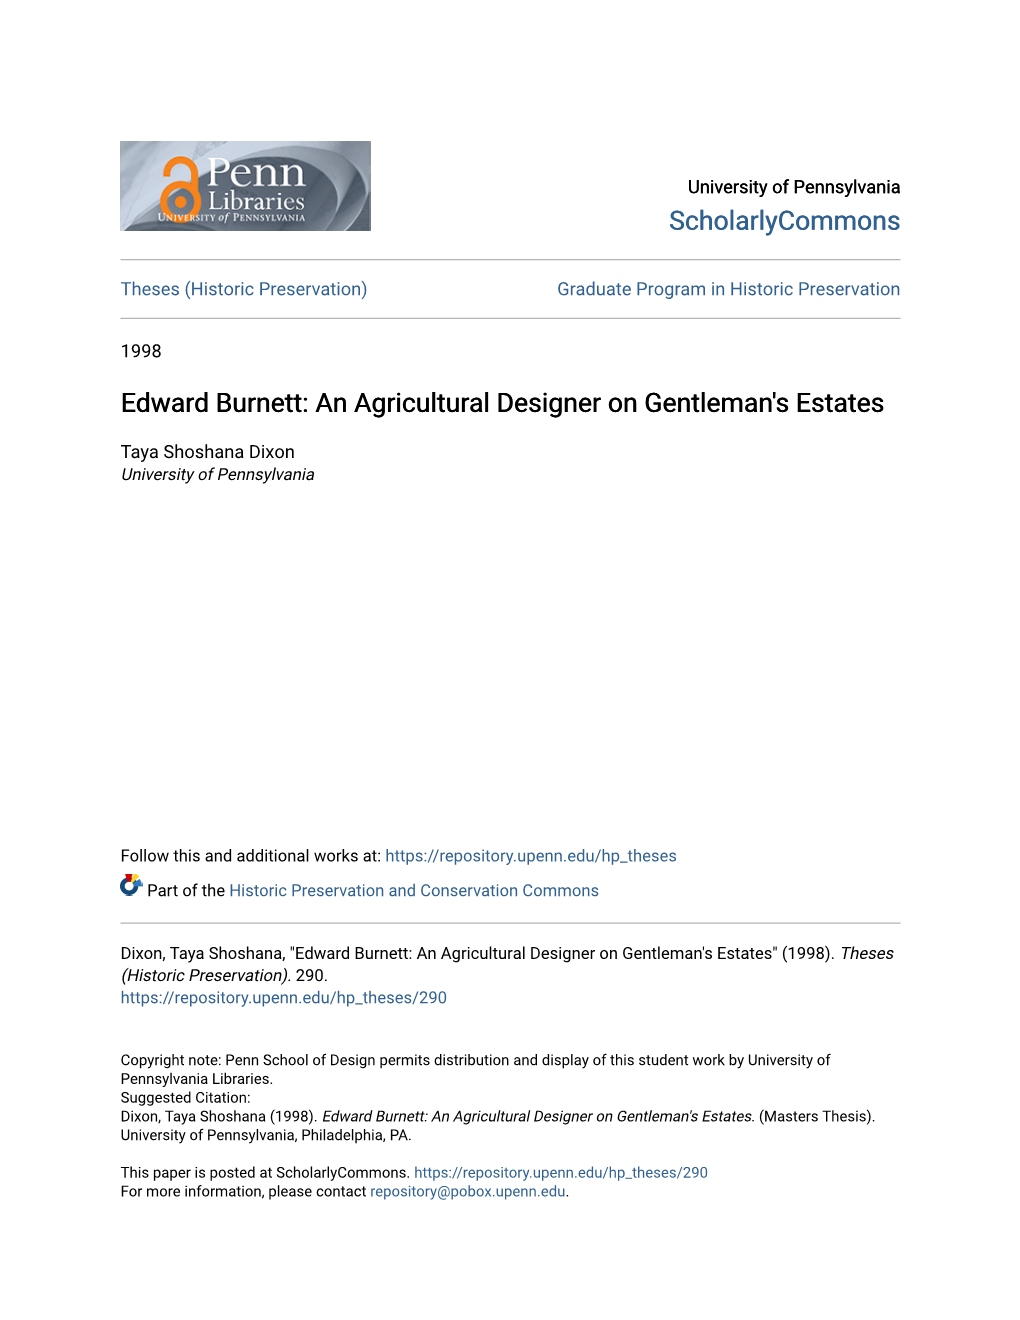 Edward Burnett: an Agricultural Designer on Gentleman's Estates